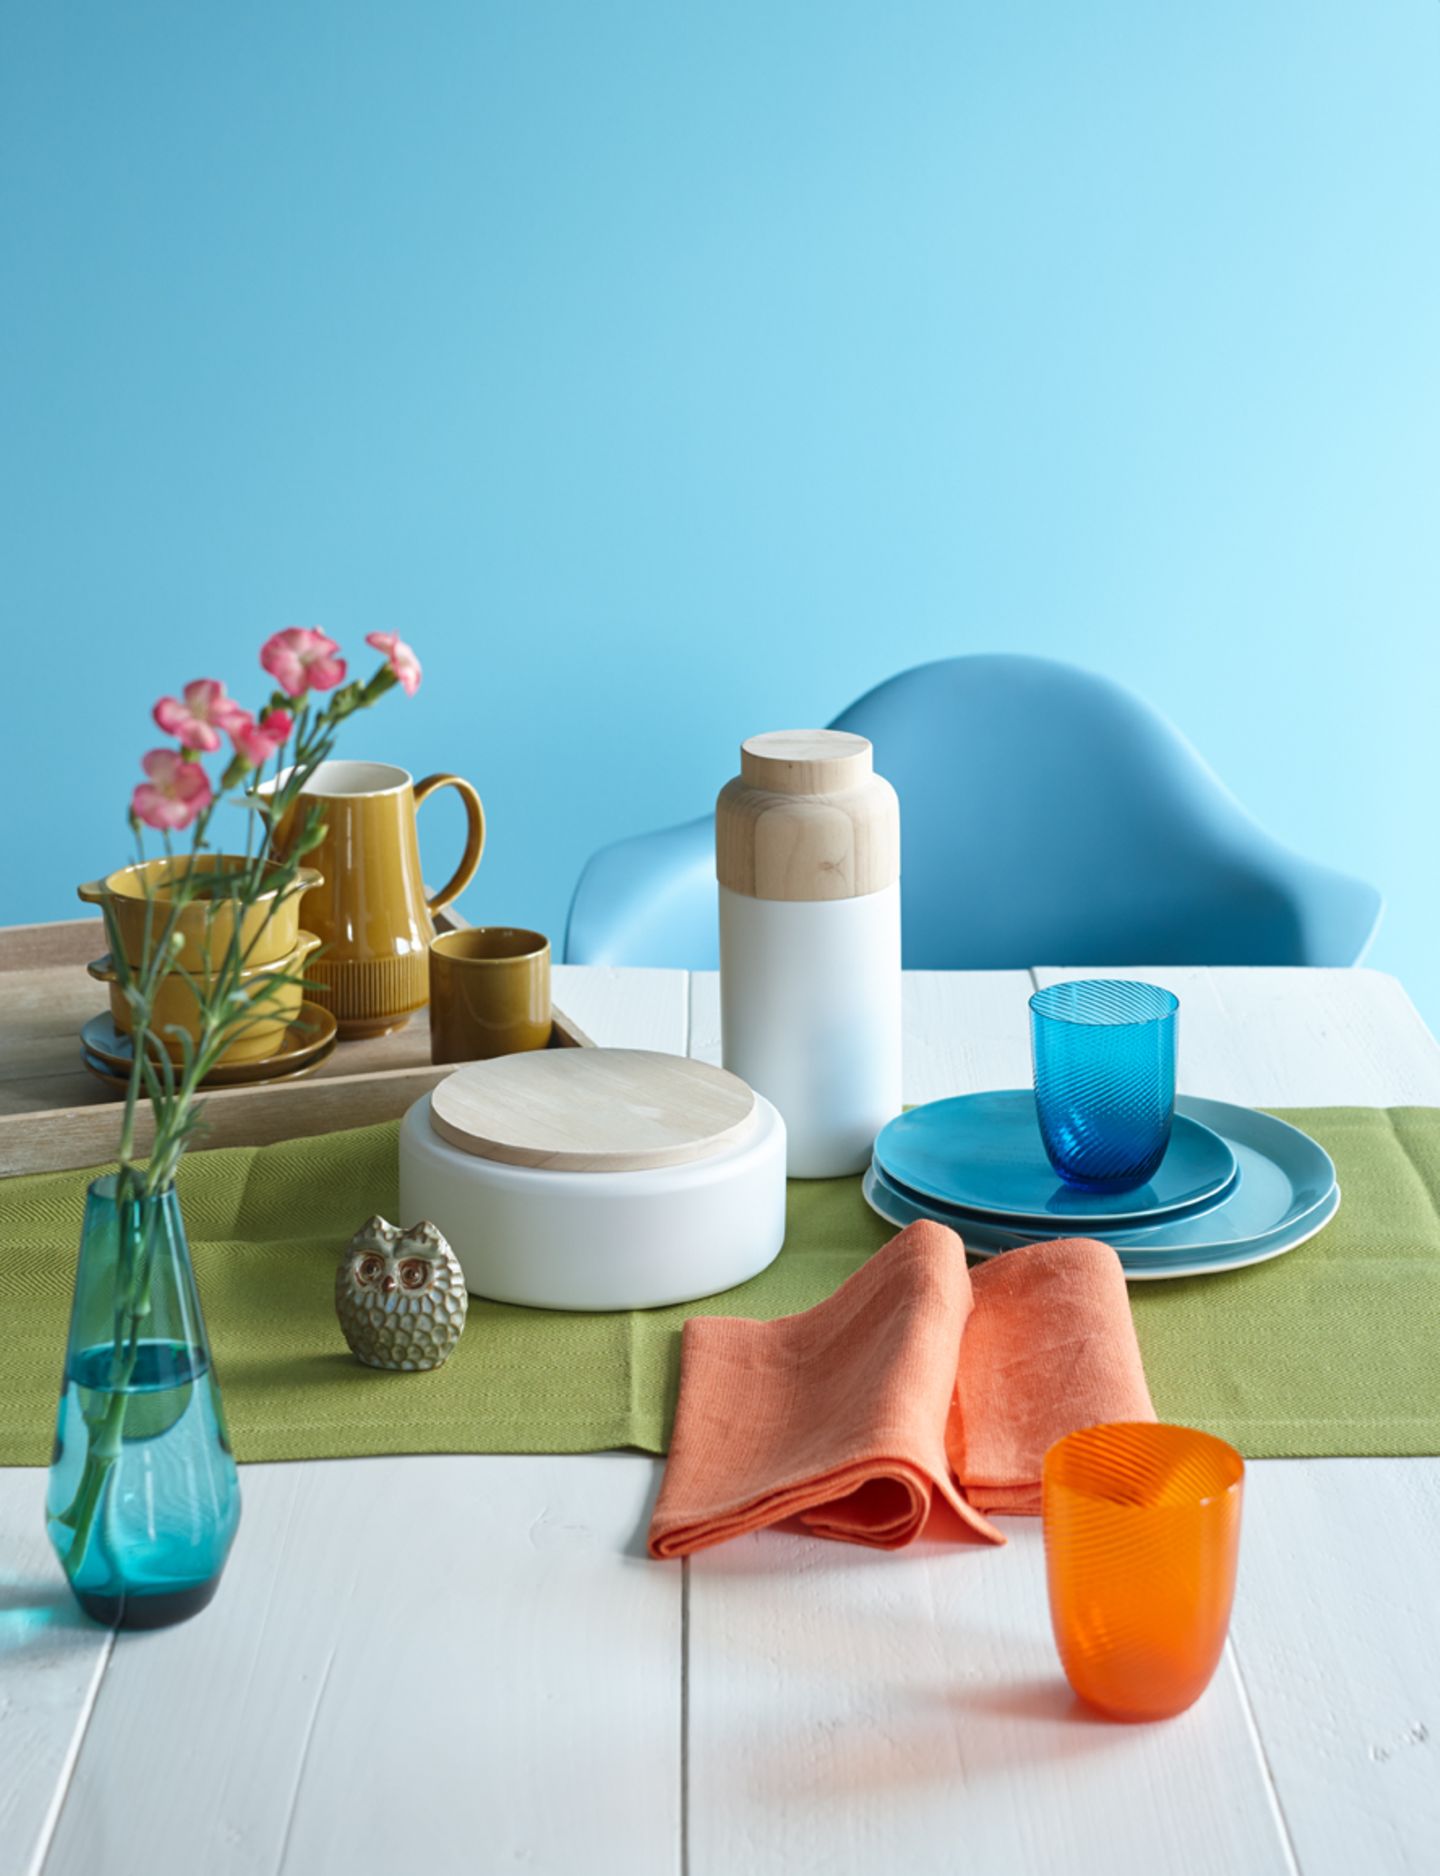 Geschirr in Blau und Grün, Servietten und Glas in Orange